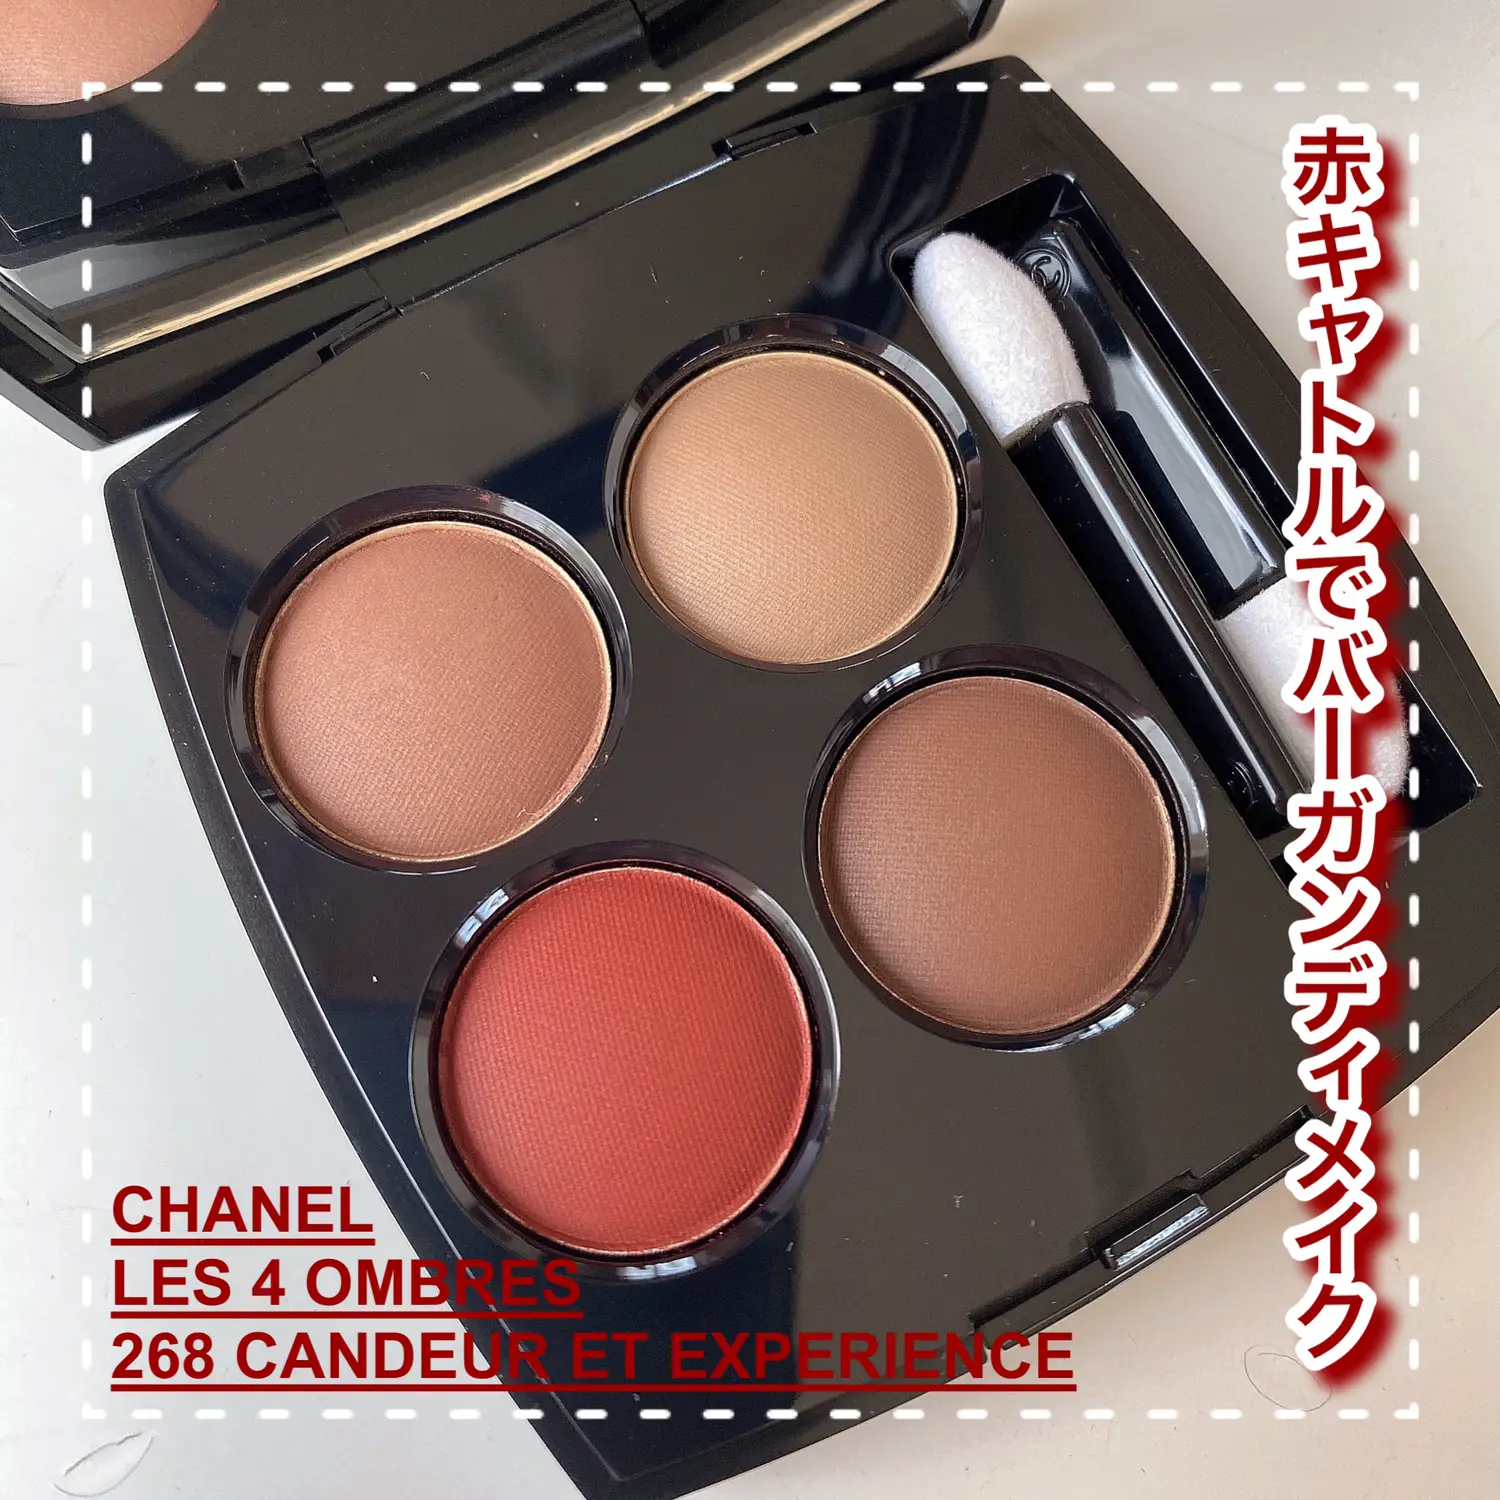 Chanel Candeur et Seduction Palette – what a surprise - Angela van Rose